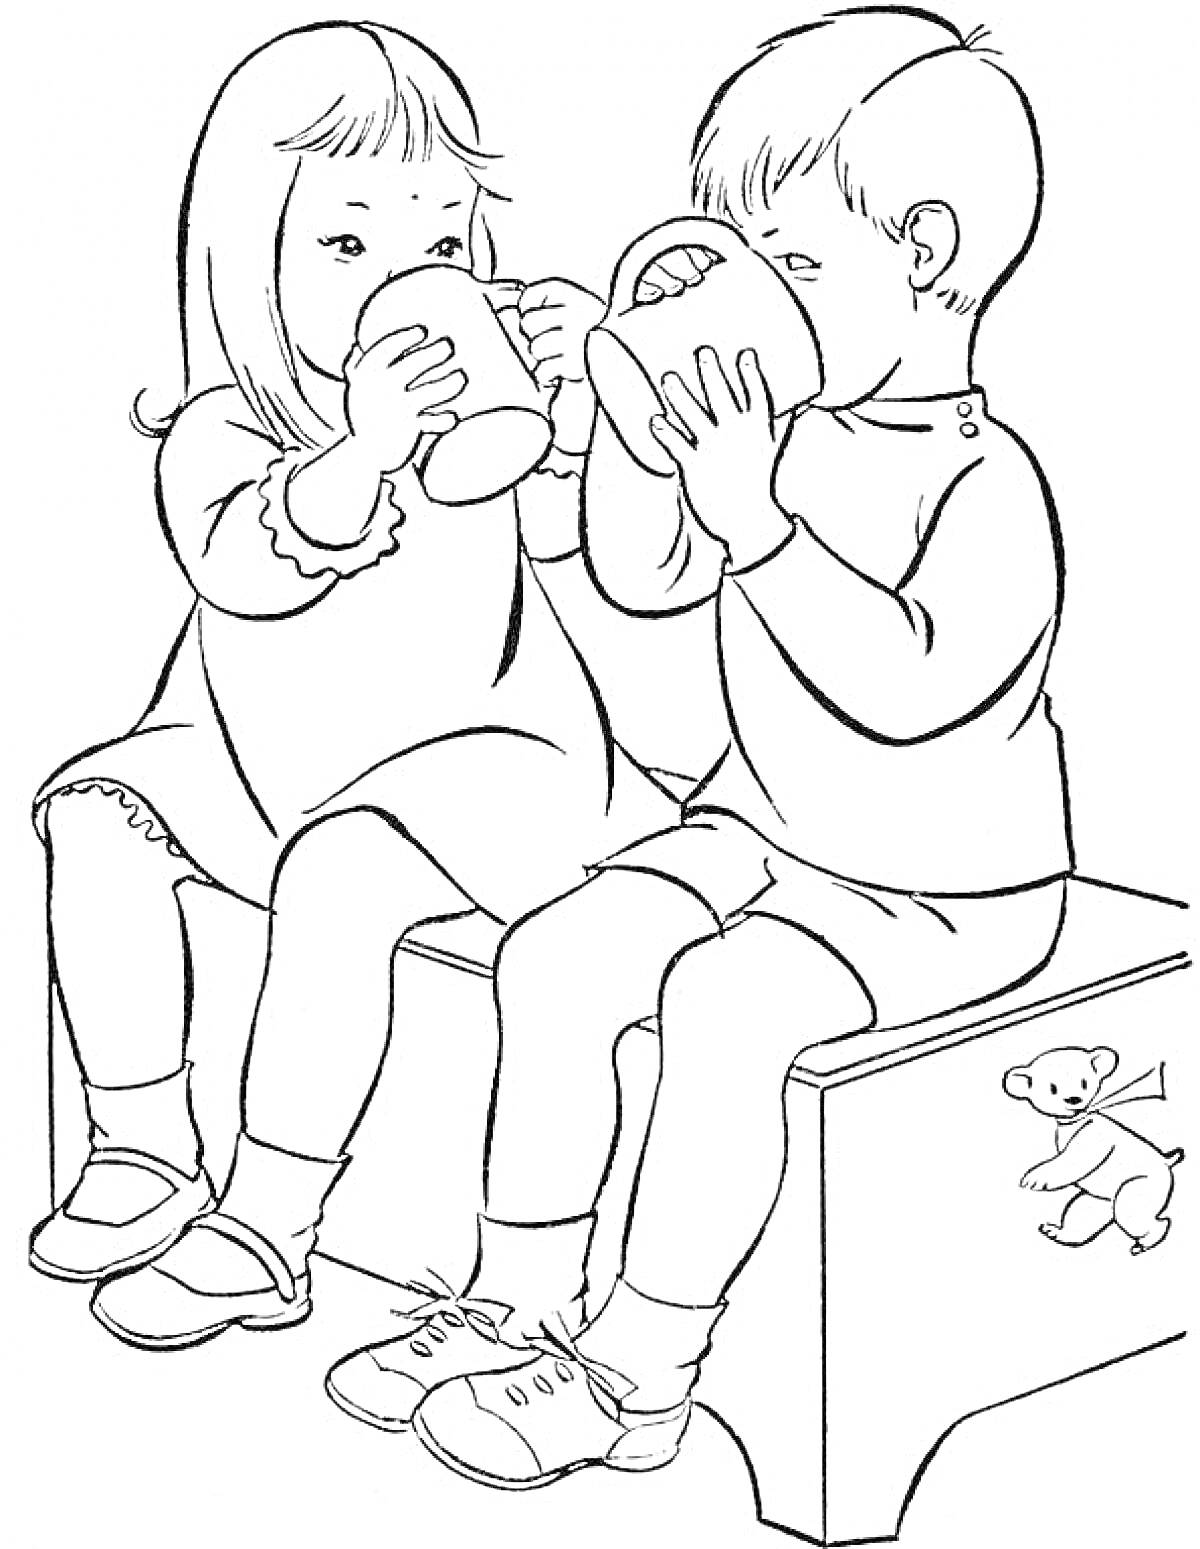 Раскраска Два ребенка пьют из чашек, сидя на скамейке, с игрушкой-медвежонком на заднем плане